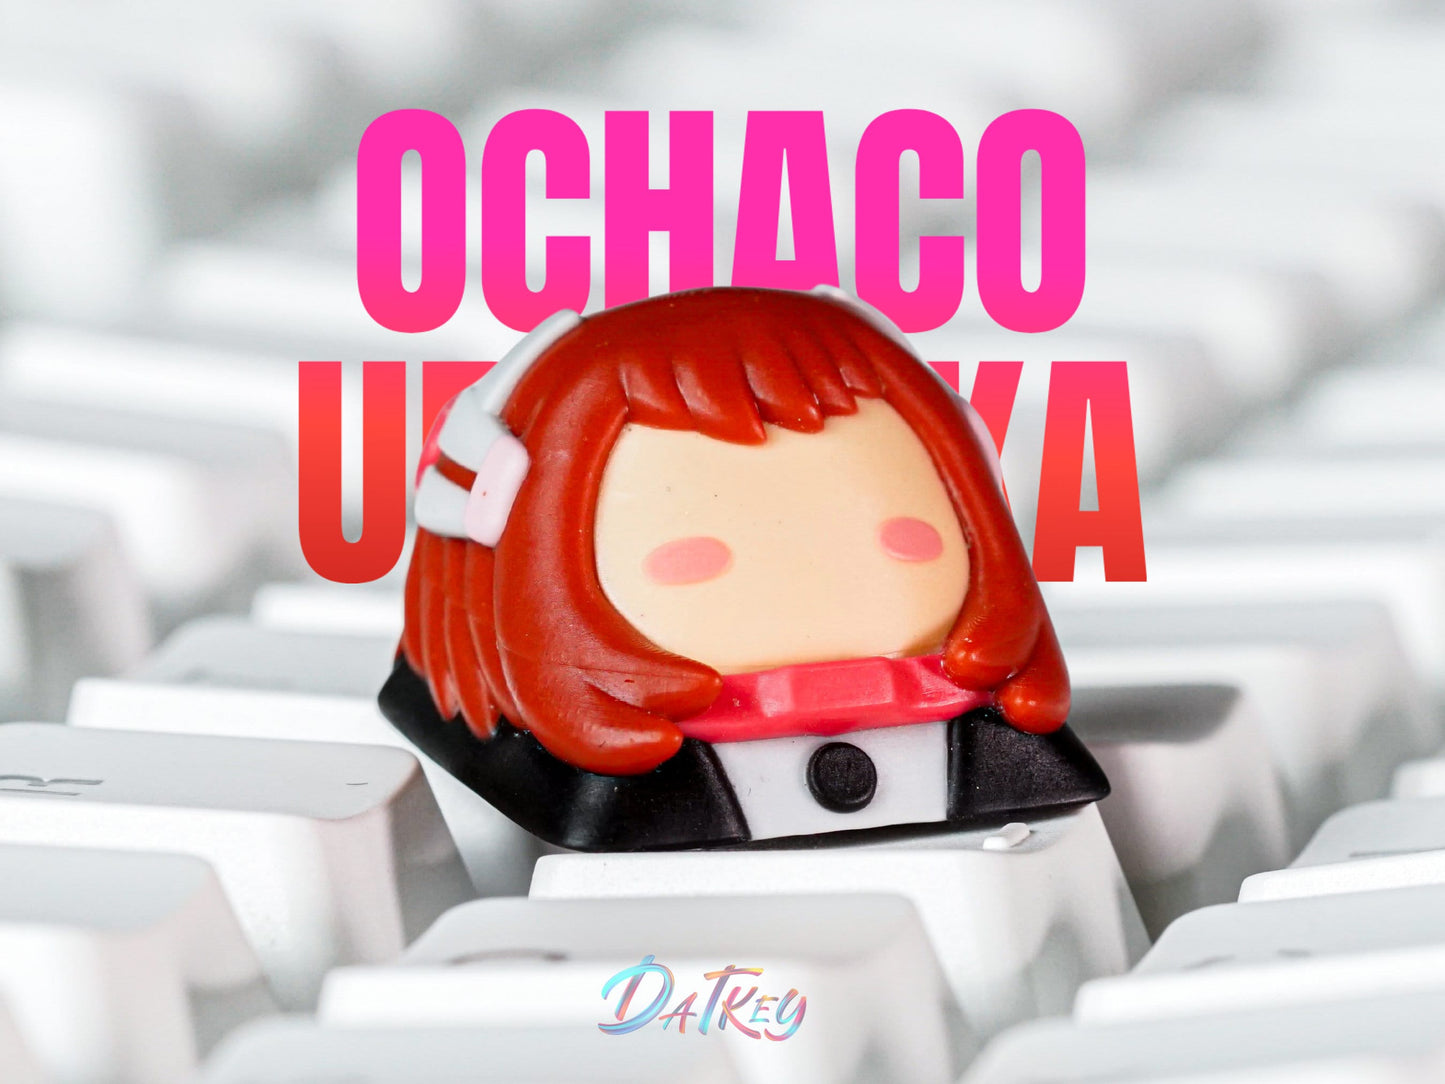 O.cha.co Ura.ra.ka Keycap- B.N.H.A Keycap- Anime Keycap- Keycap for MX Cherry Switches Mechanical Keyboard - Datkey Studio